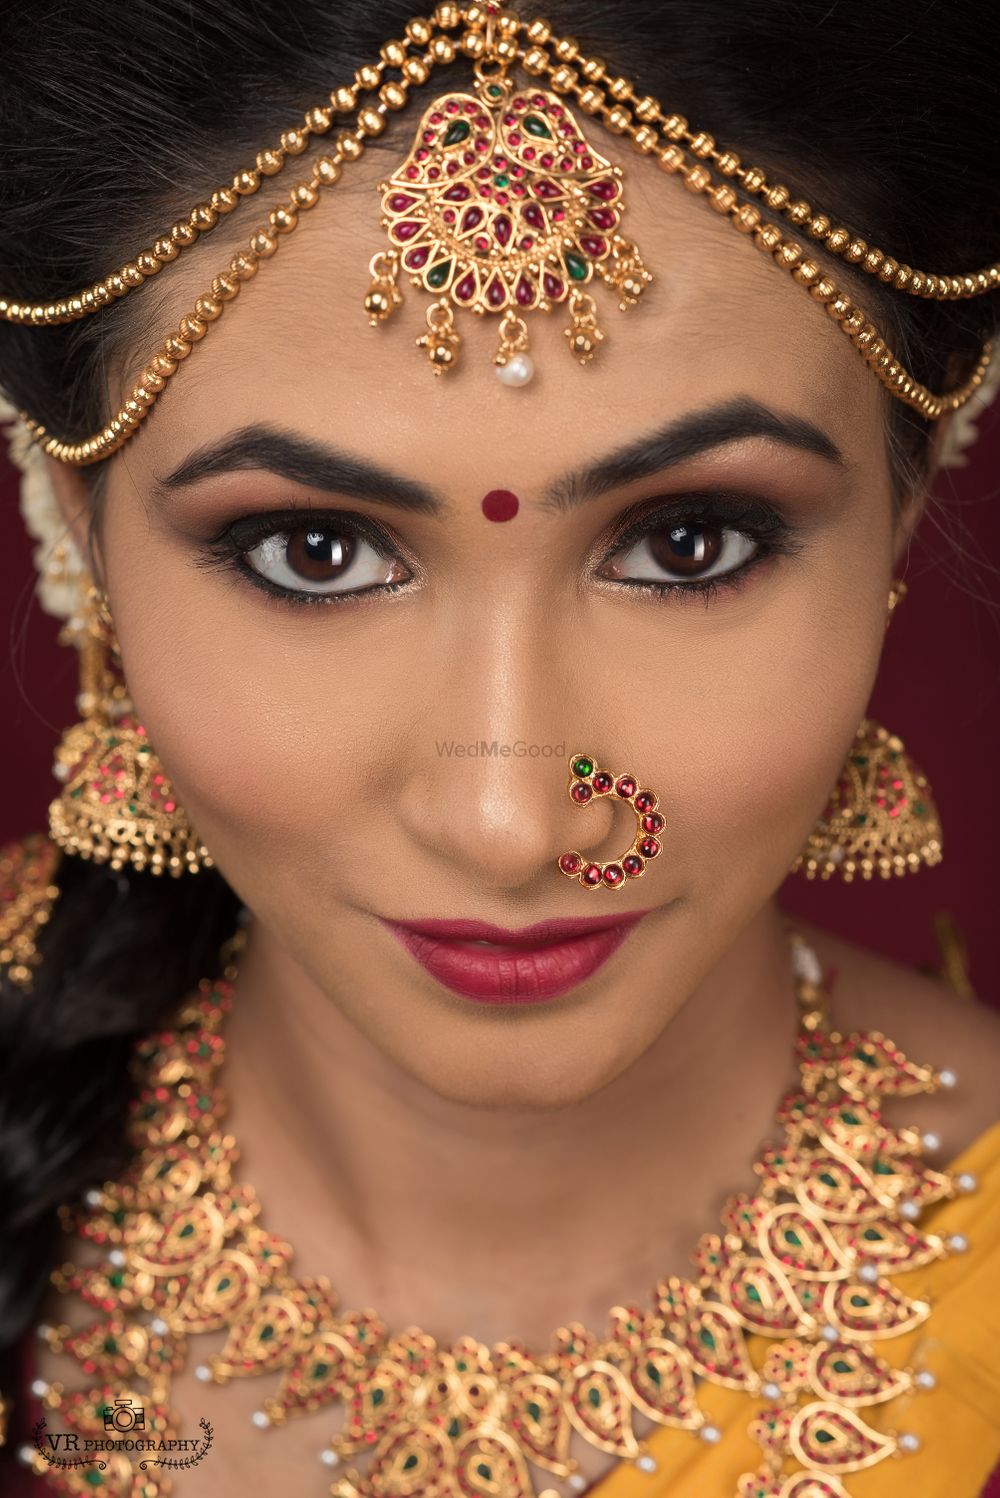 Photo By Bobby Rajendran Makeup Artist - Bridal Makeup